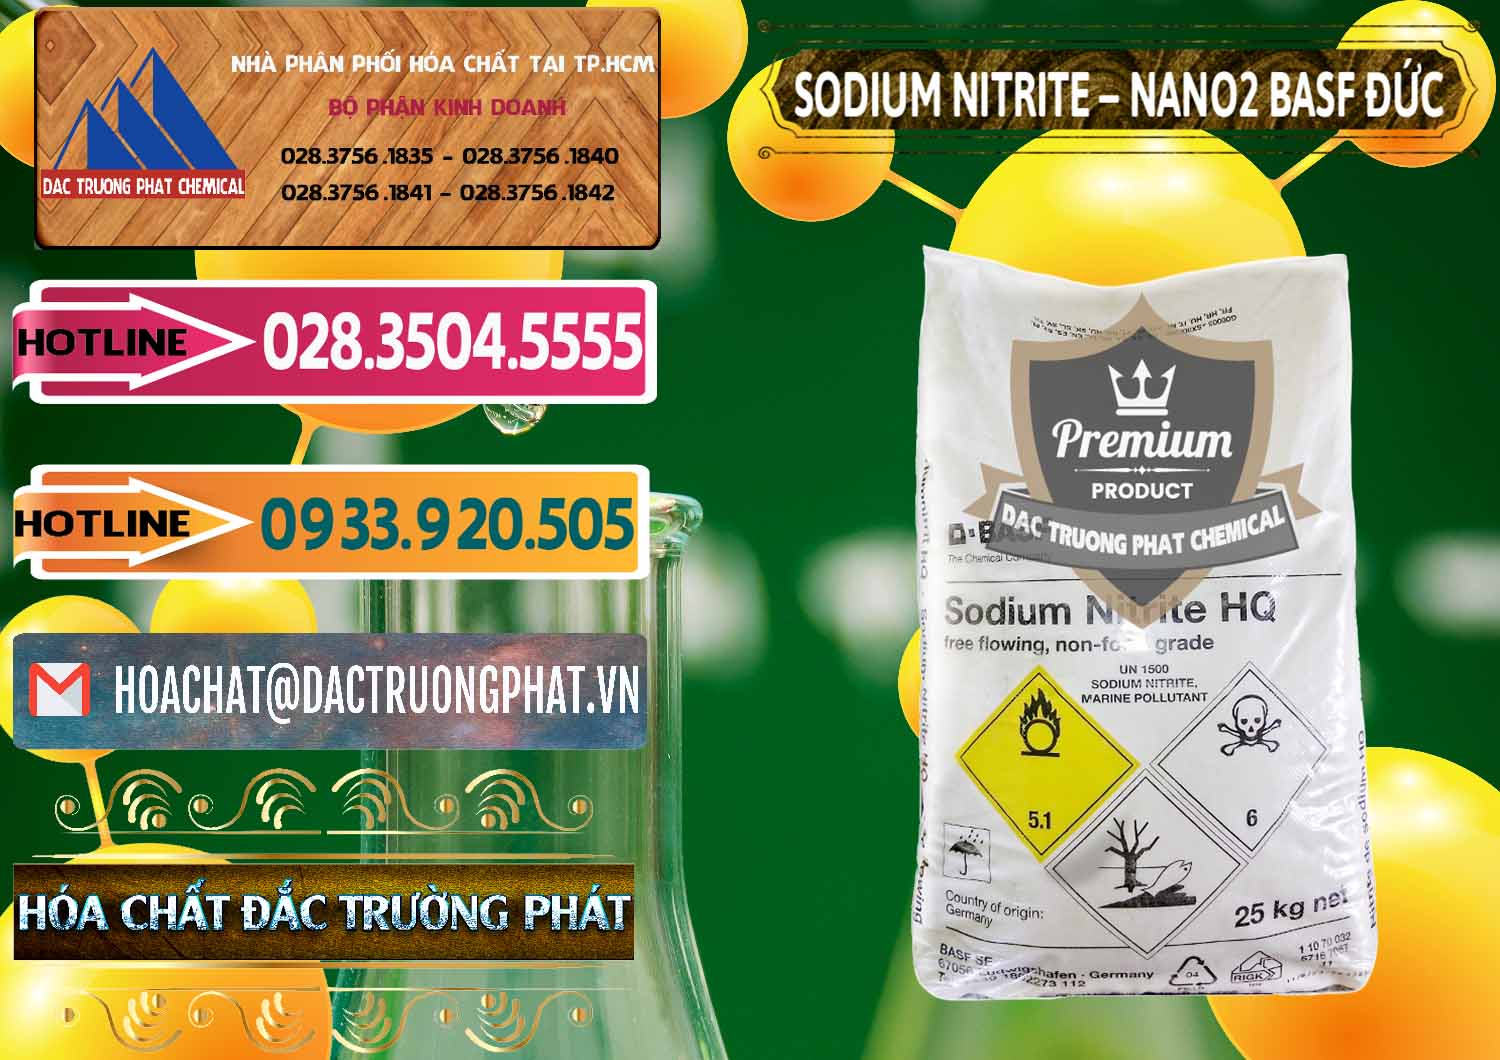 Cty nhập khẩu - bán Sodium Nitrite - NANO2 Đức BASF Germany - 0148 - Công ty kinh doanh & cung cấp hóa chất tại TP.HCM - dactruongphat.vn